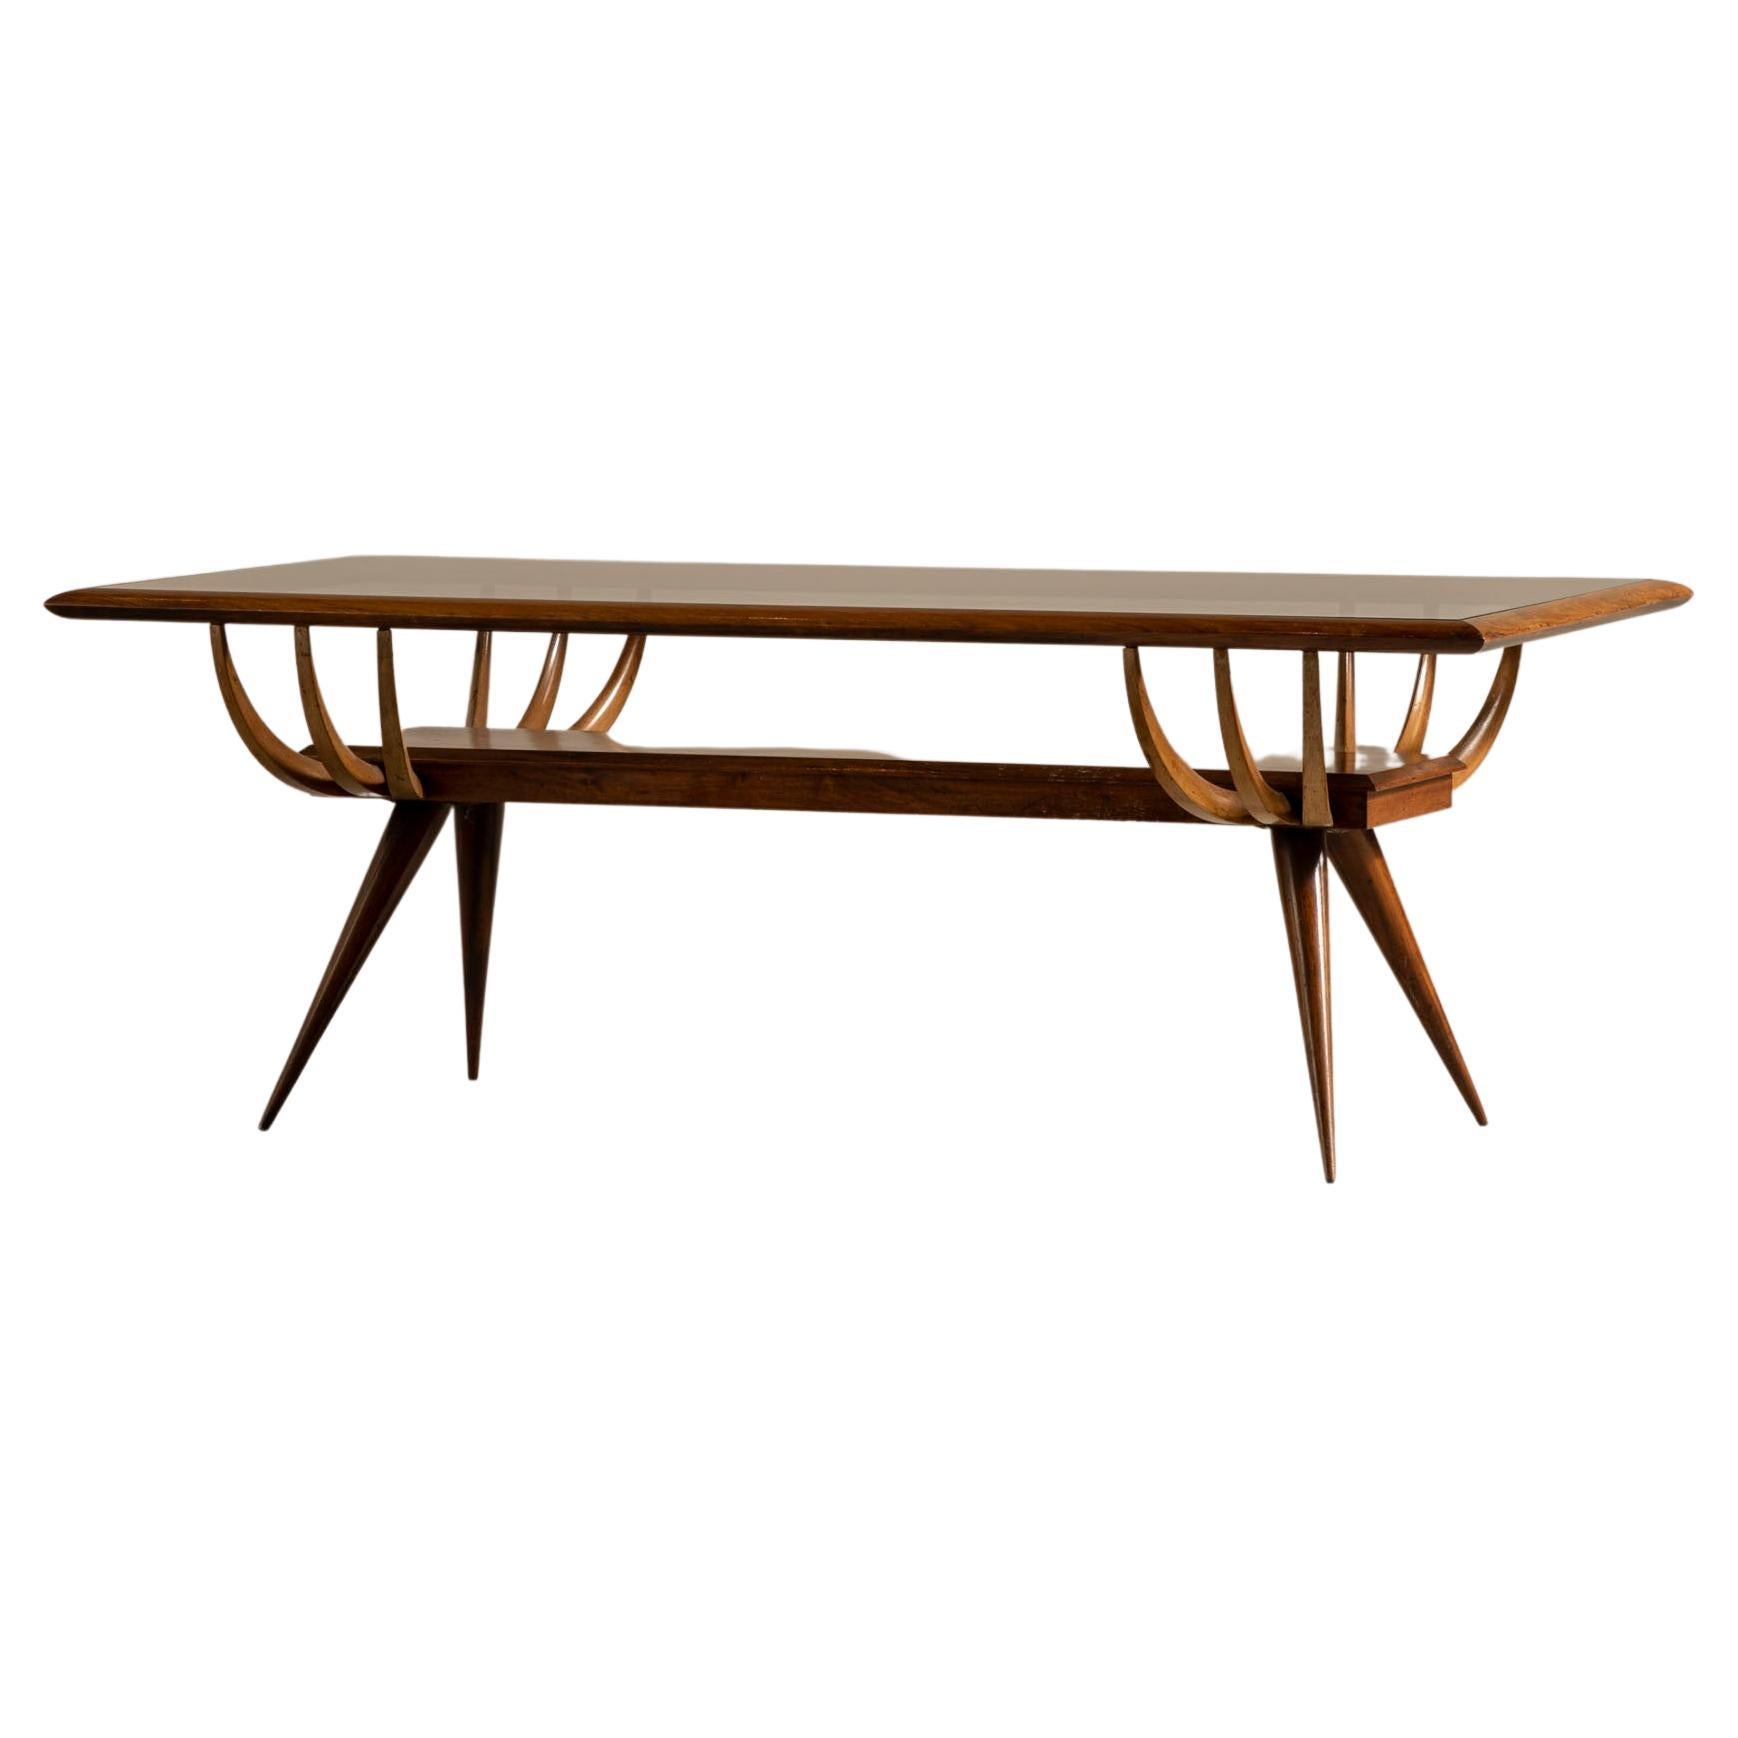 Table basse en bois de Caviuna, Giuseppe Scapinelli, brésilien moderne du milieu du siècle dernier